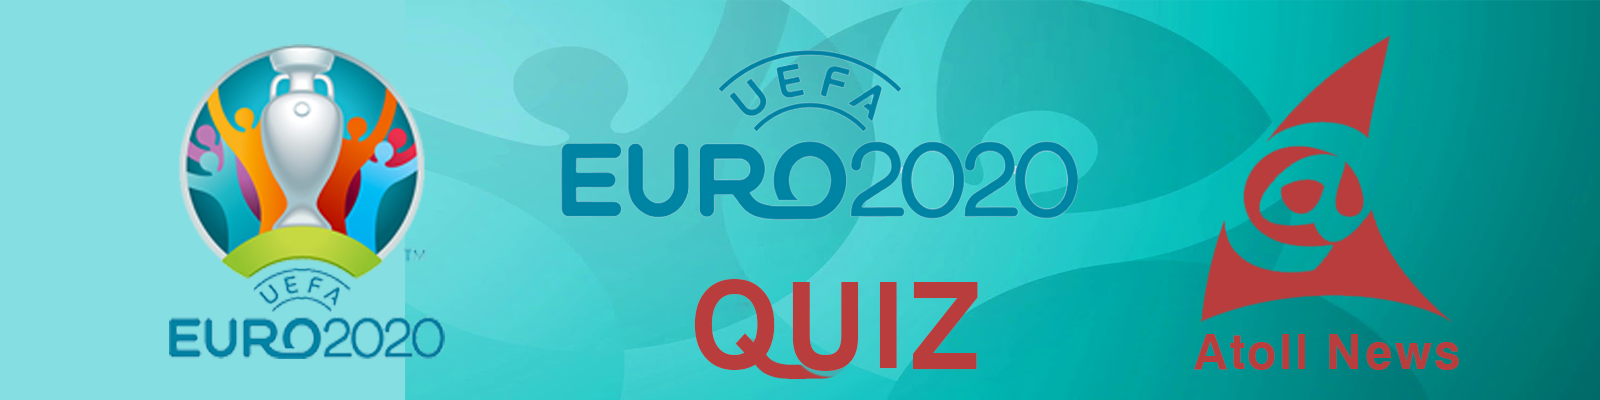 Euro Quiz Header